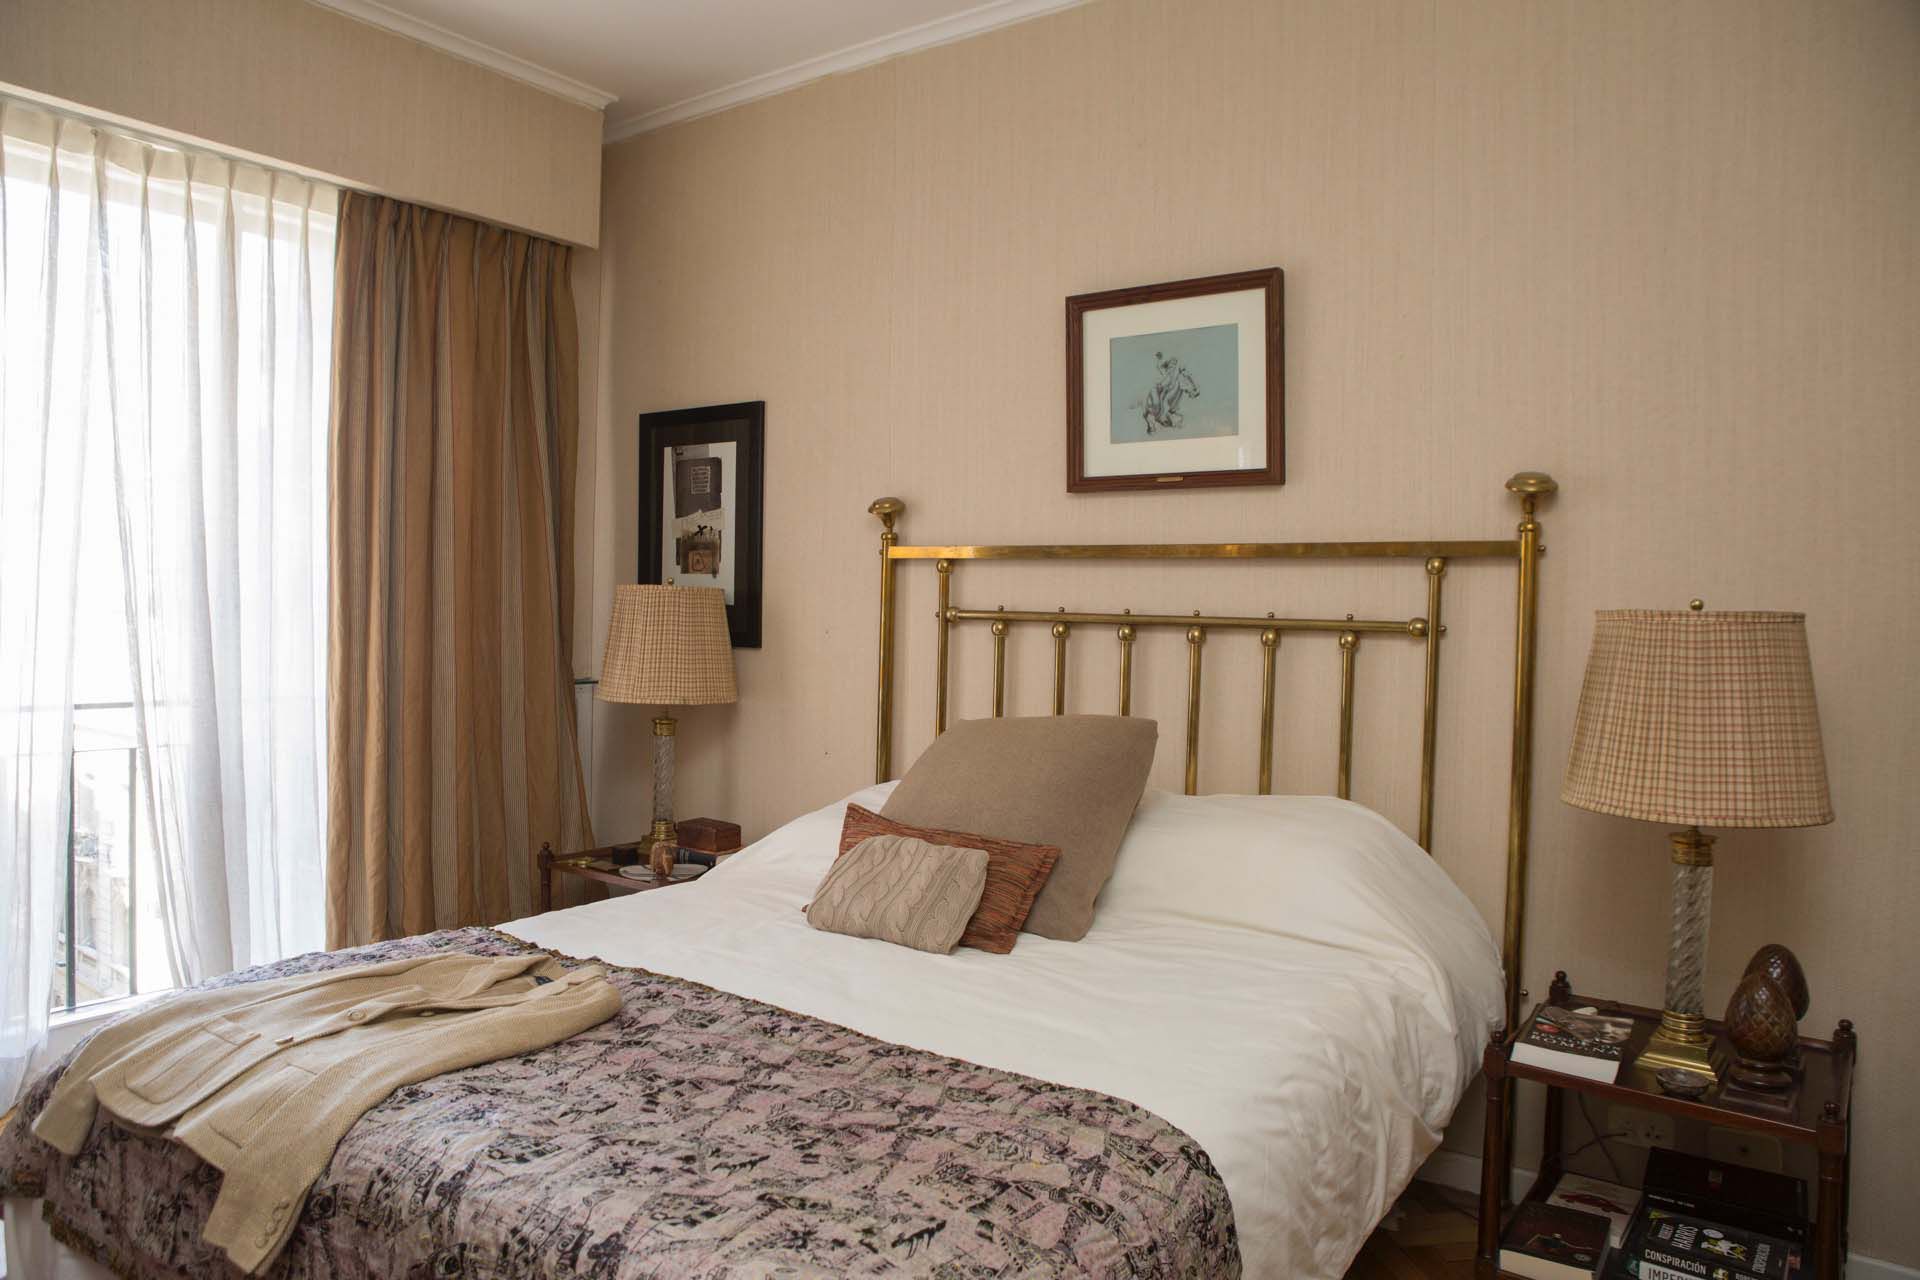 De corte más clásico, el dormitorio principal prefire la elegancia del bronce y la madera de caoba.